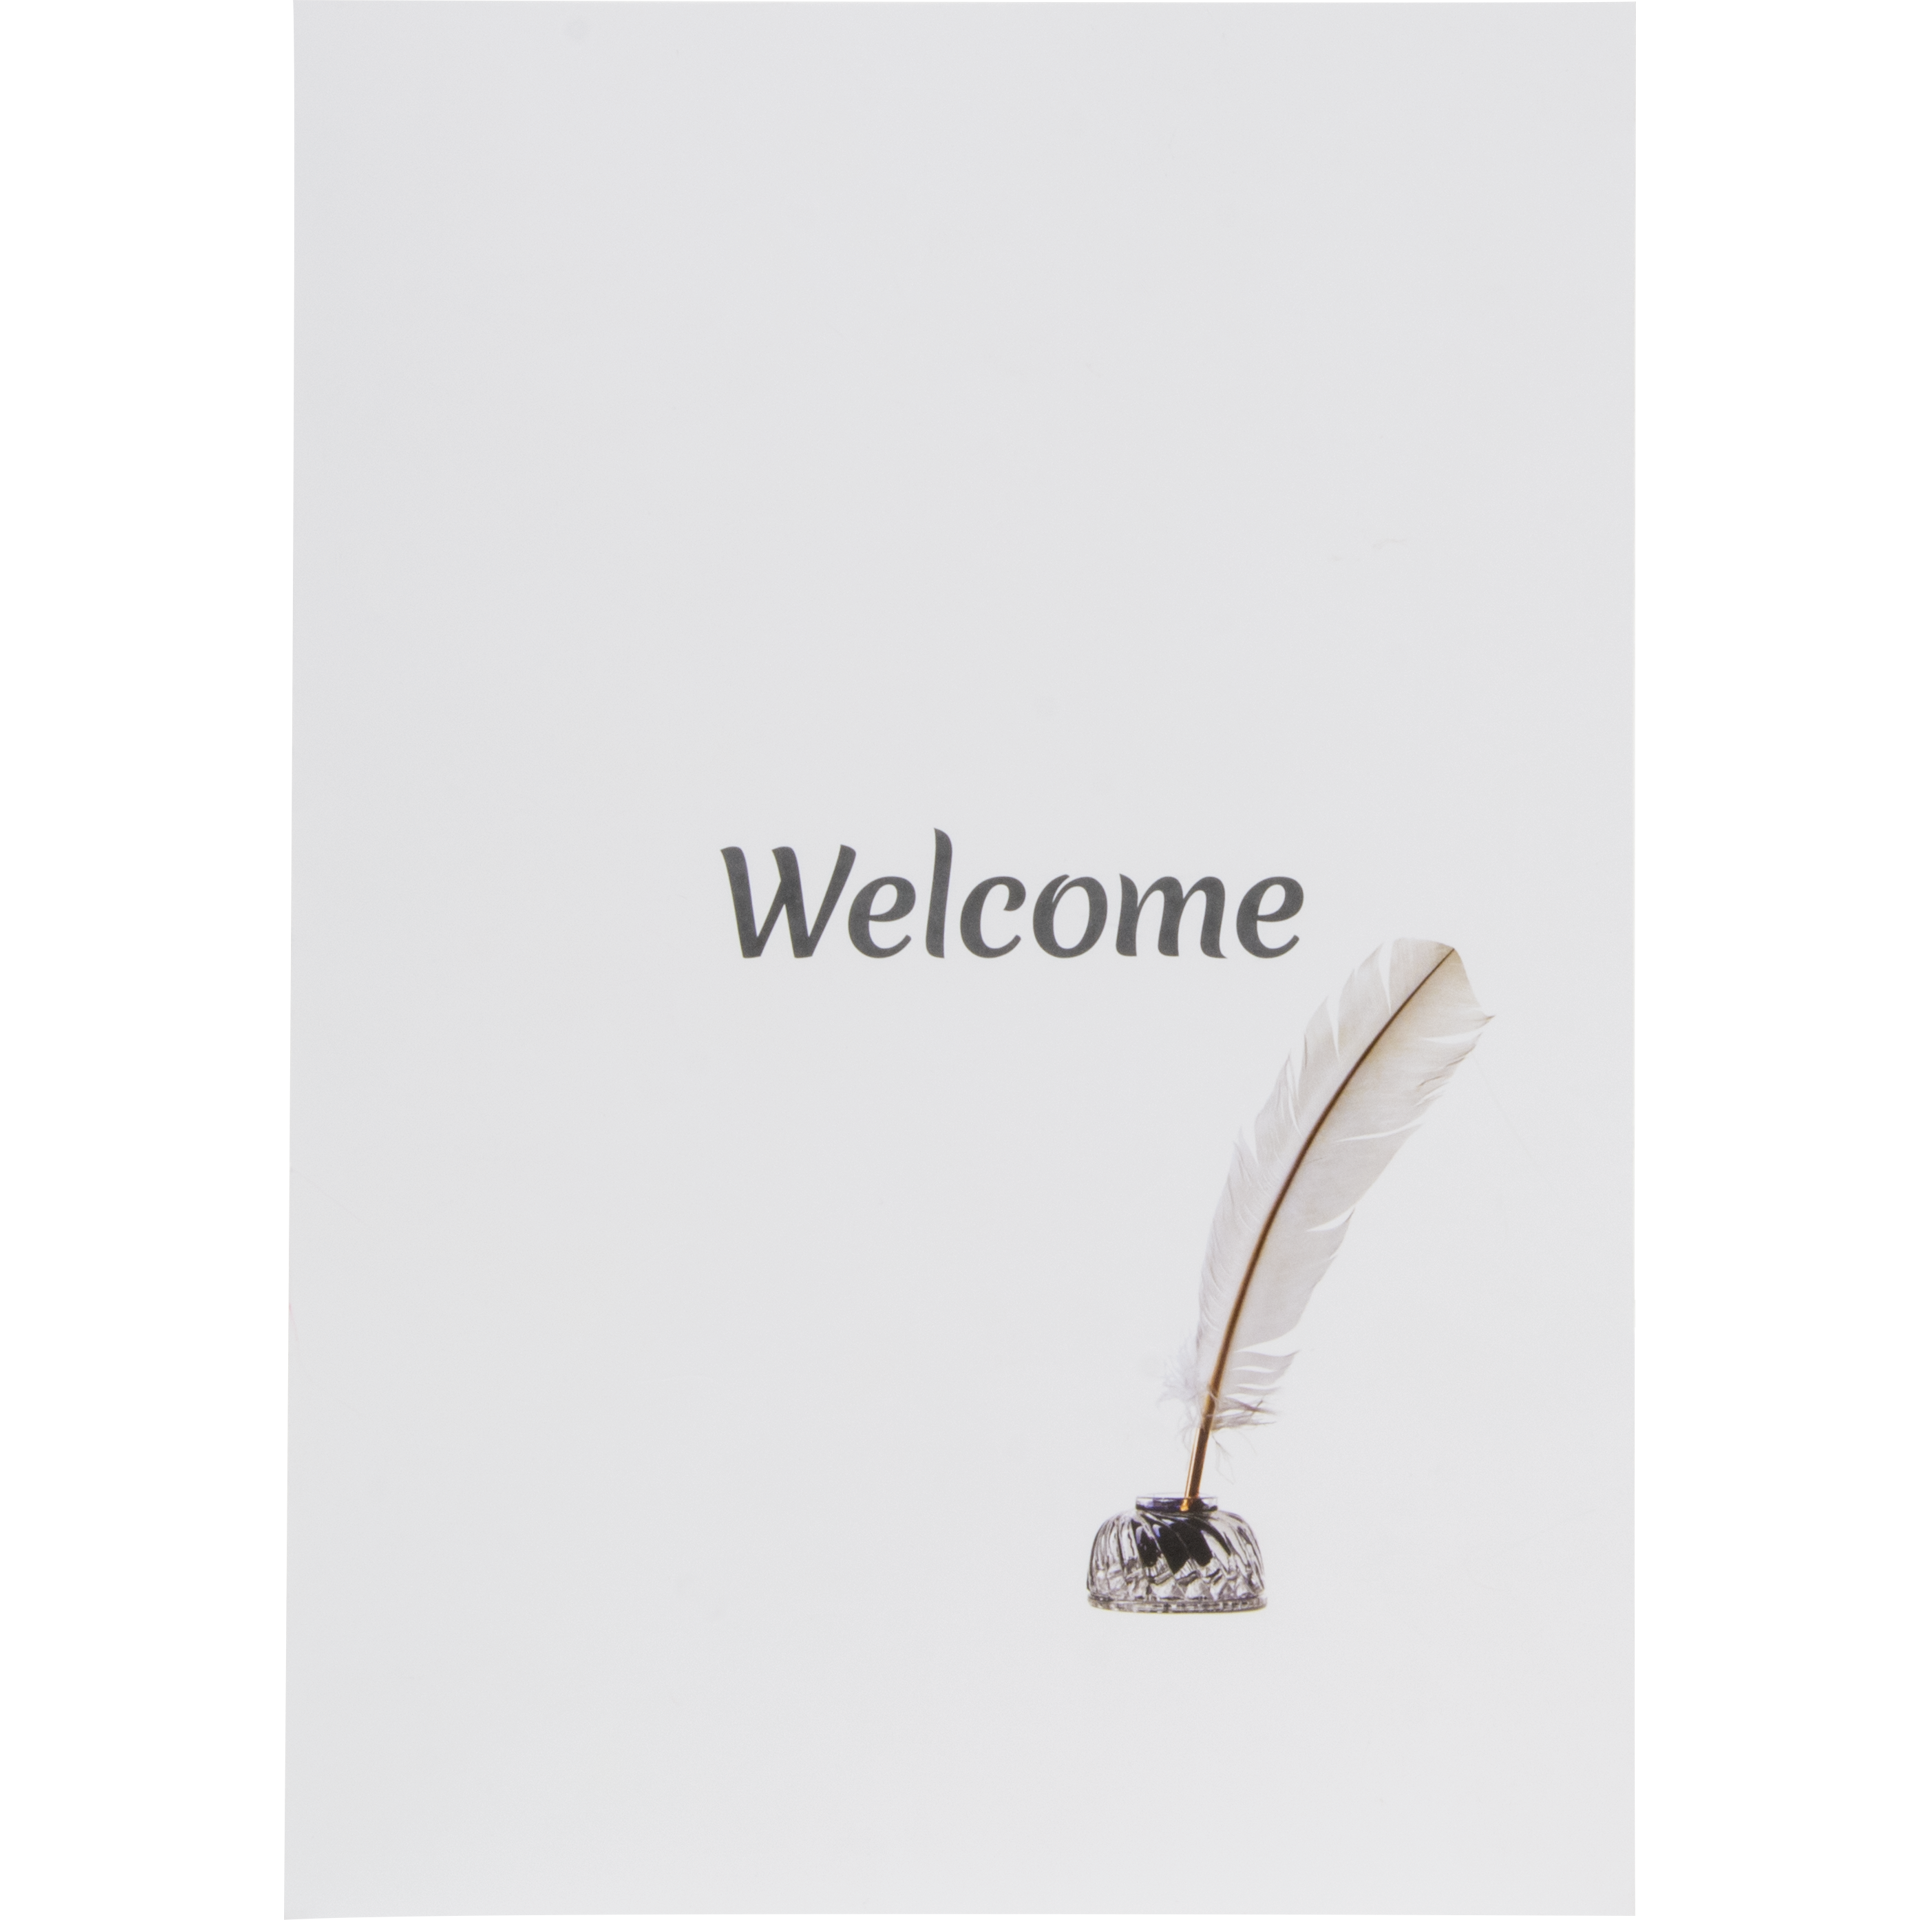 Hotelschreibmappe | Welcome Karton 300 g/m² | weiß matt 22x30,5 cm 